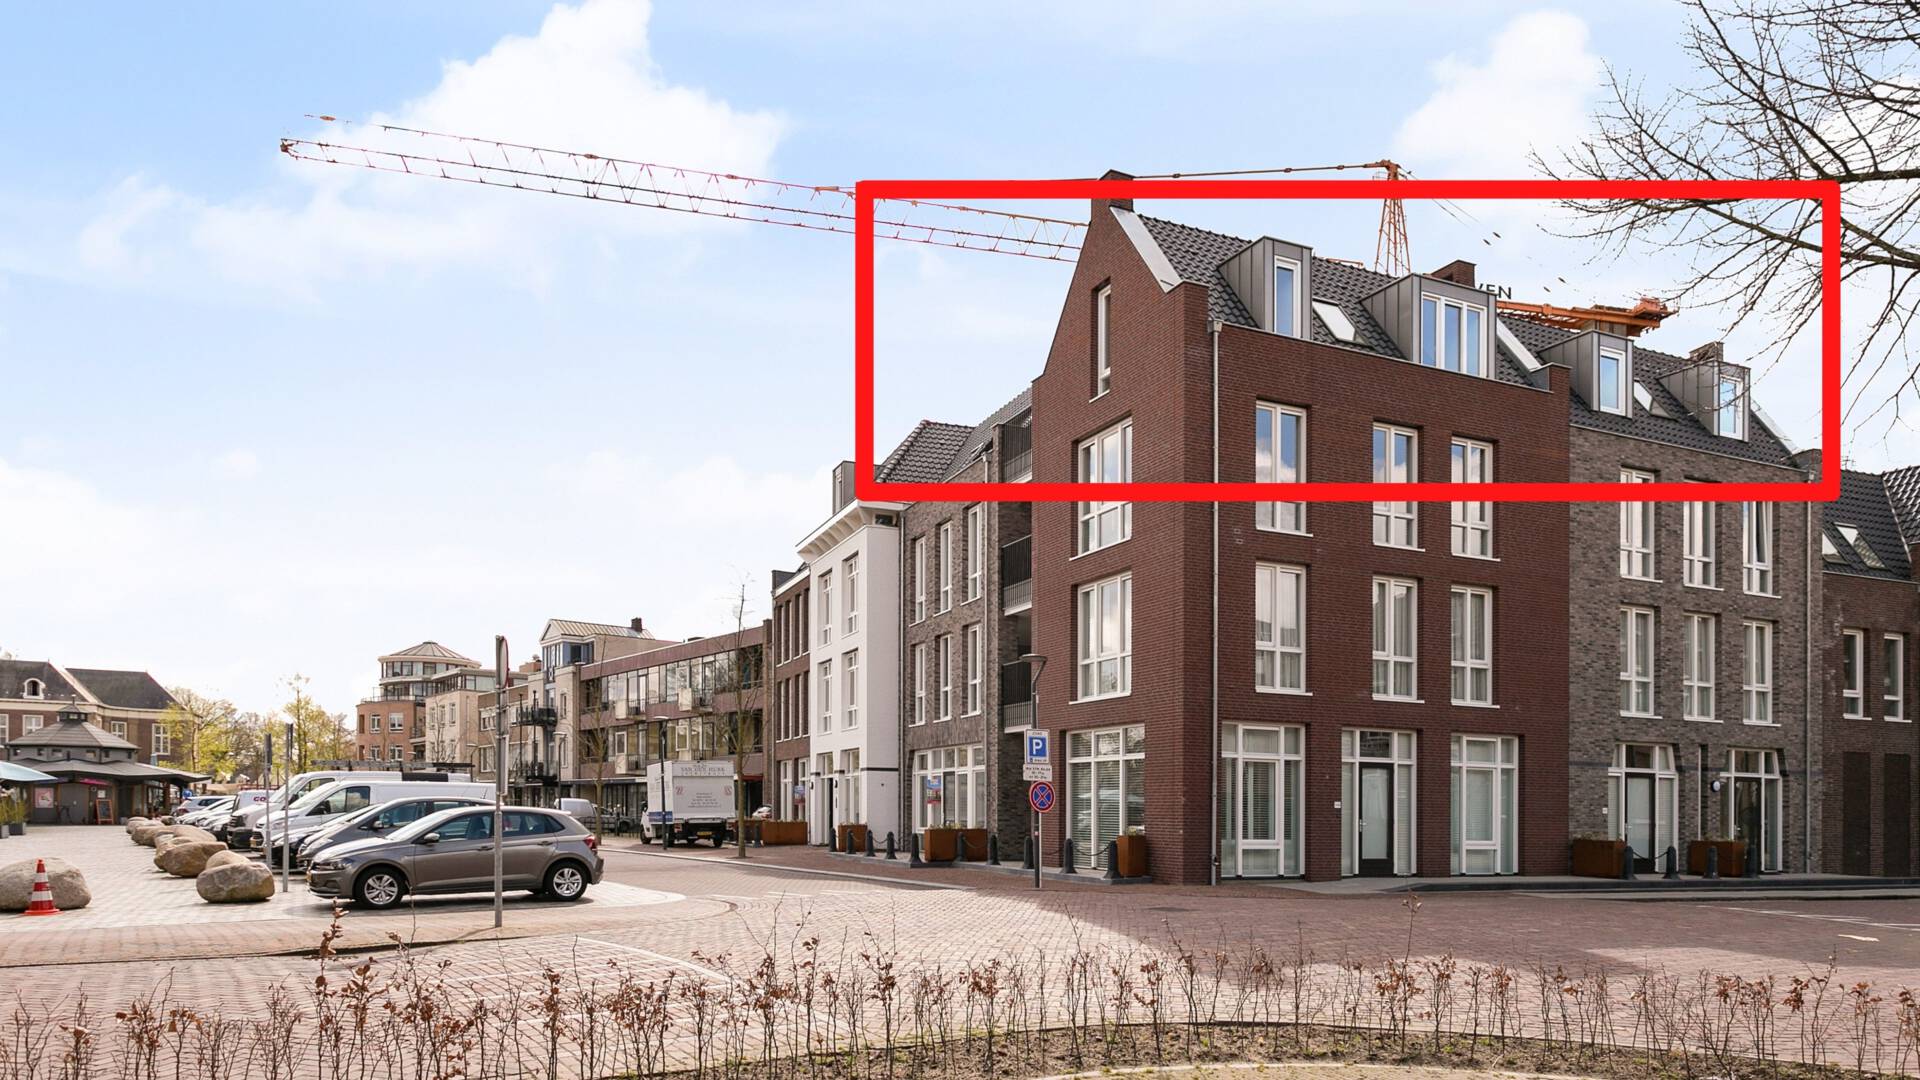 Penthouse in den Niederlanden soll für 21 BTC verkauft werden